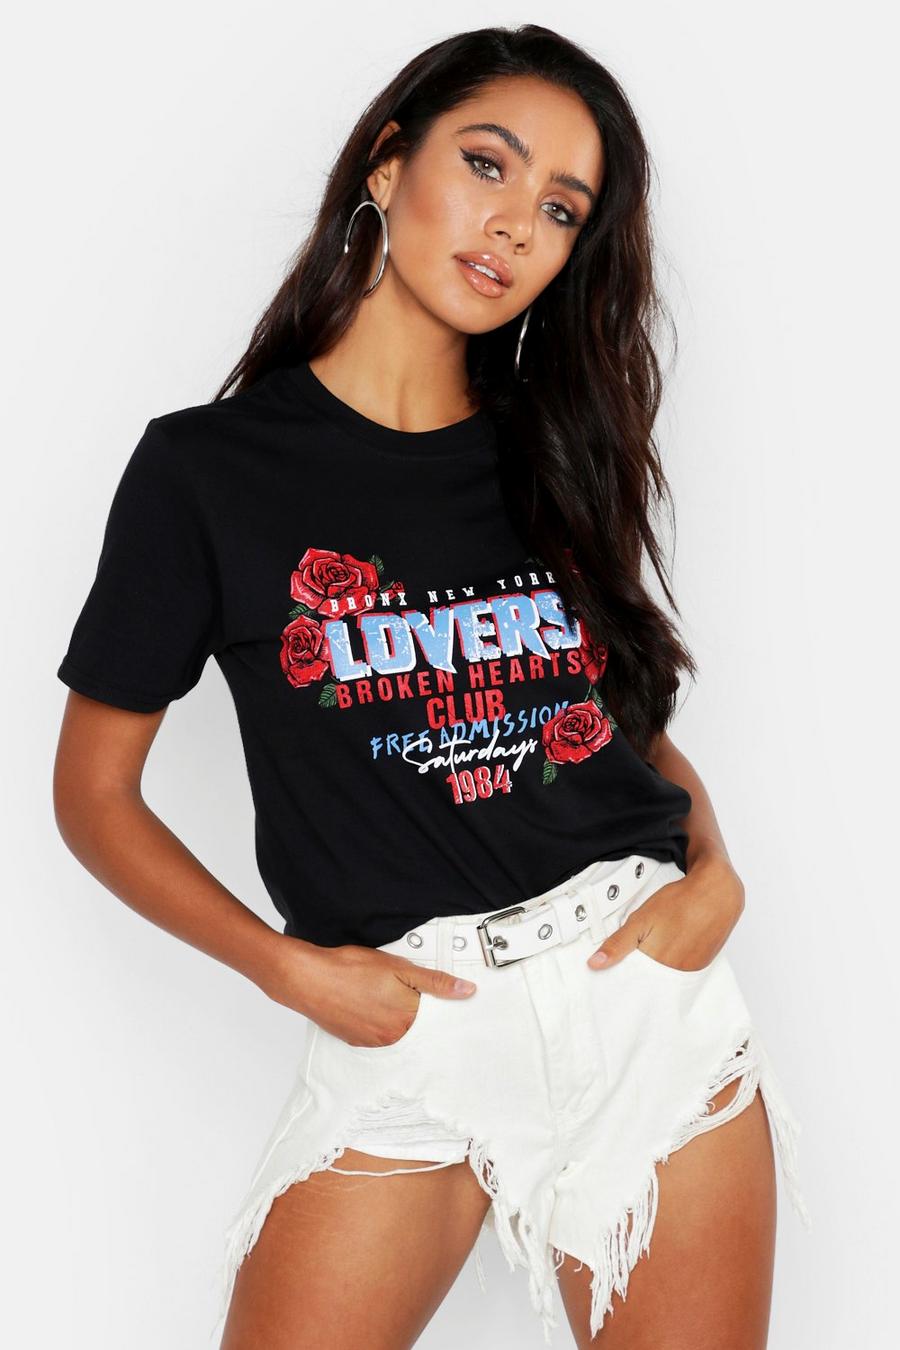 Camiseta extragrande de banda “Broken Hearts Club” image number 1